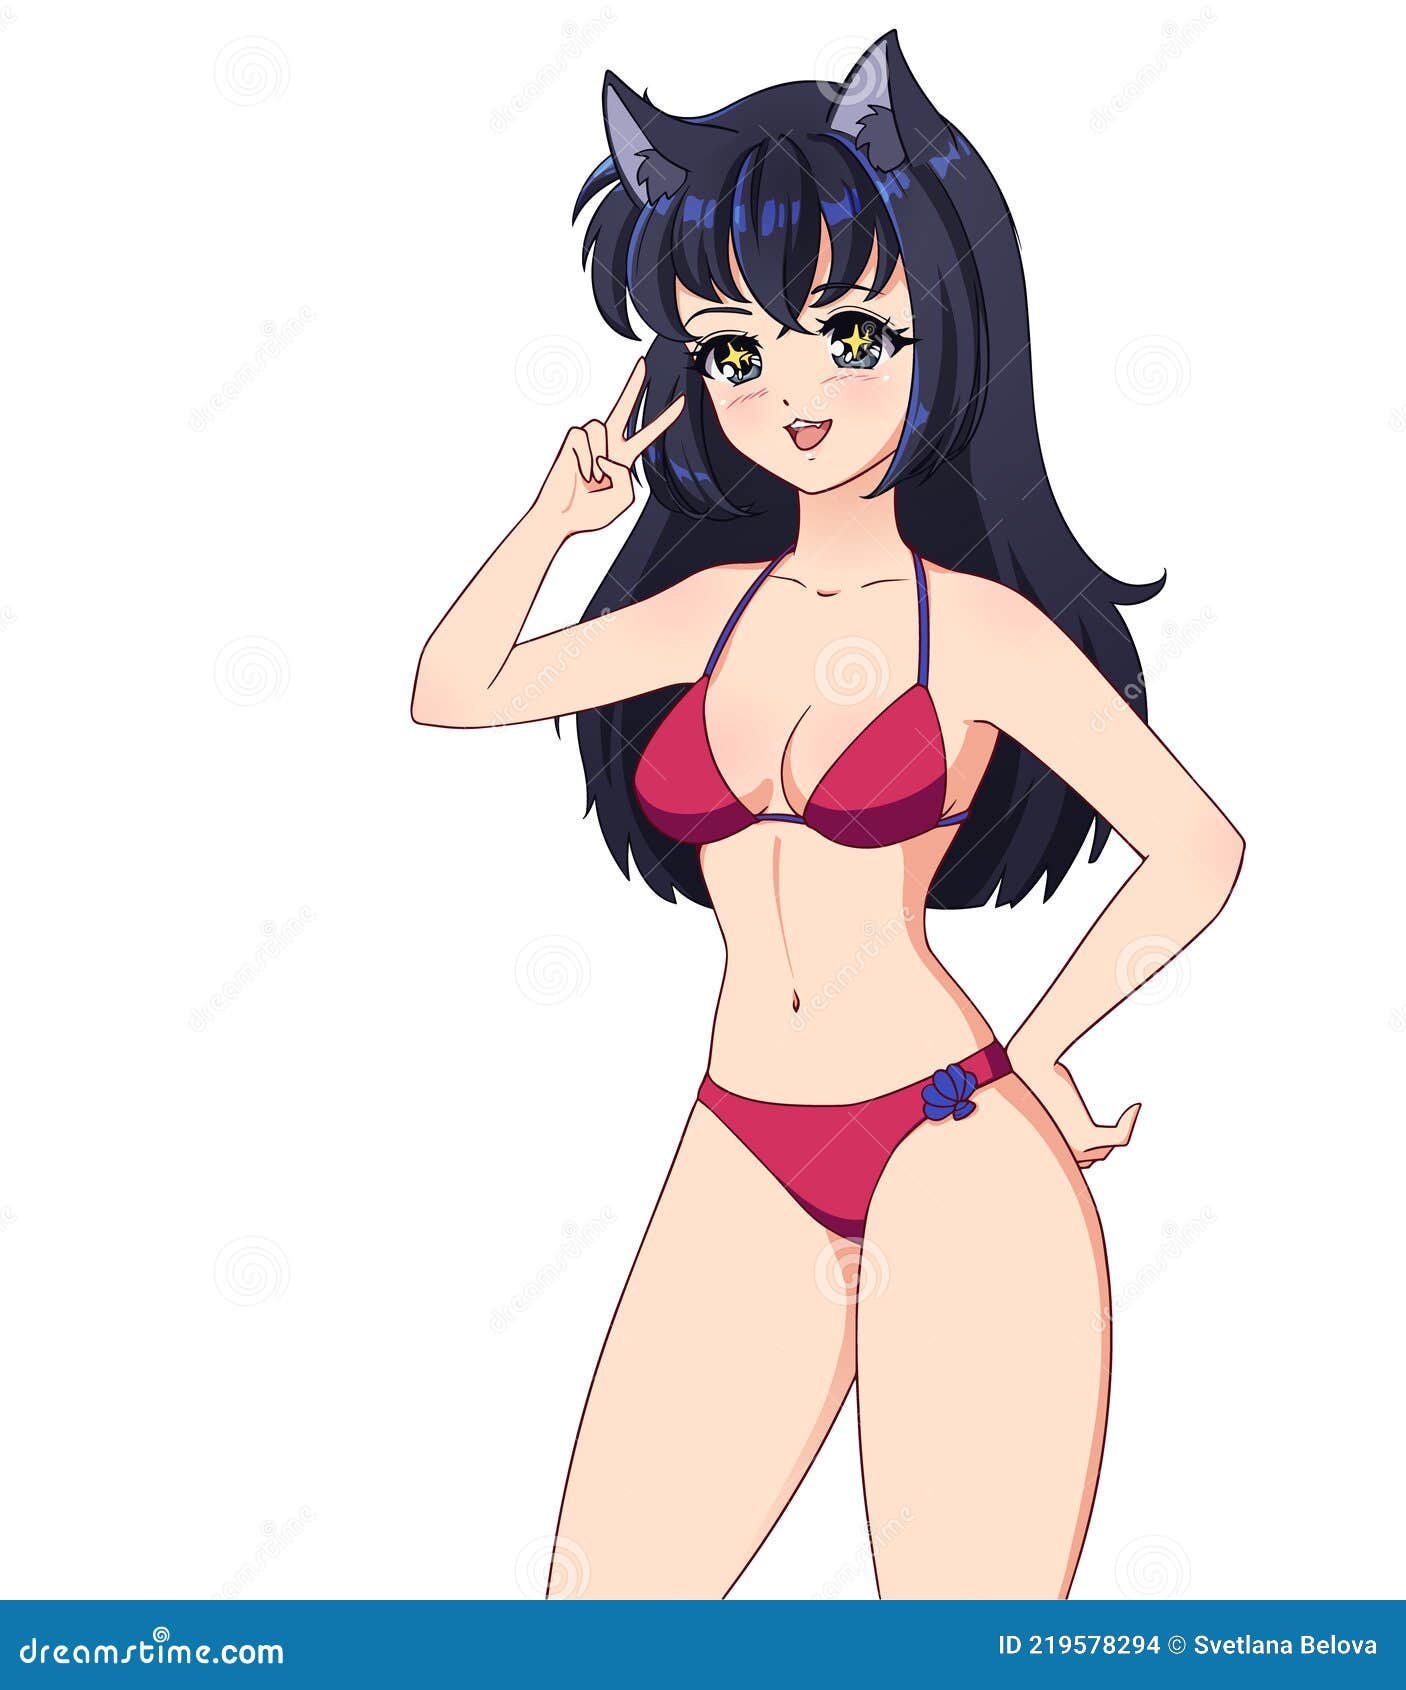 x1000" width="550" alt="Hot Cartoon Sexy Anime Girls. t...